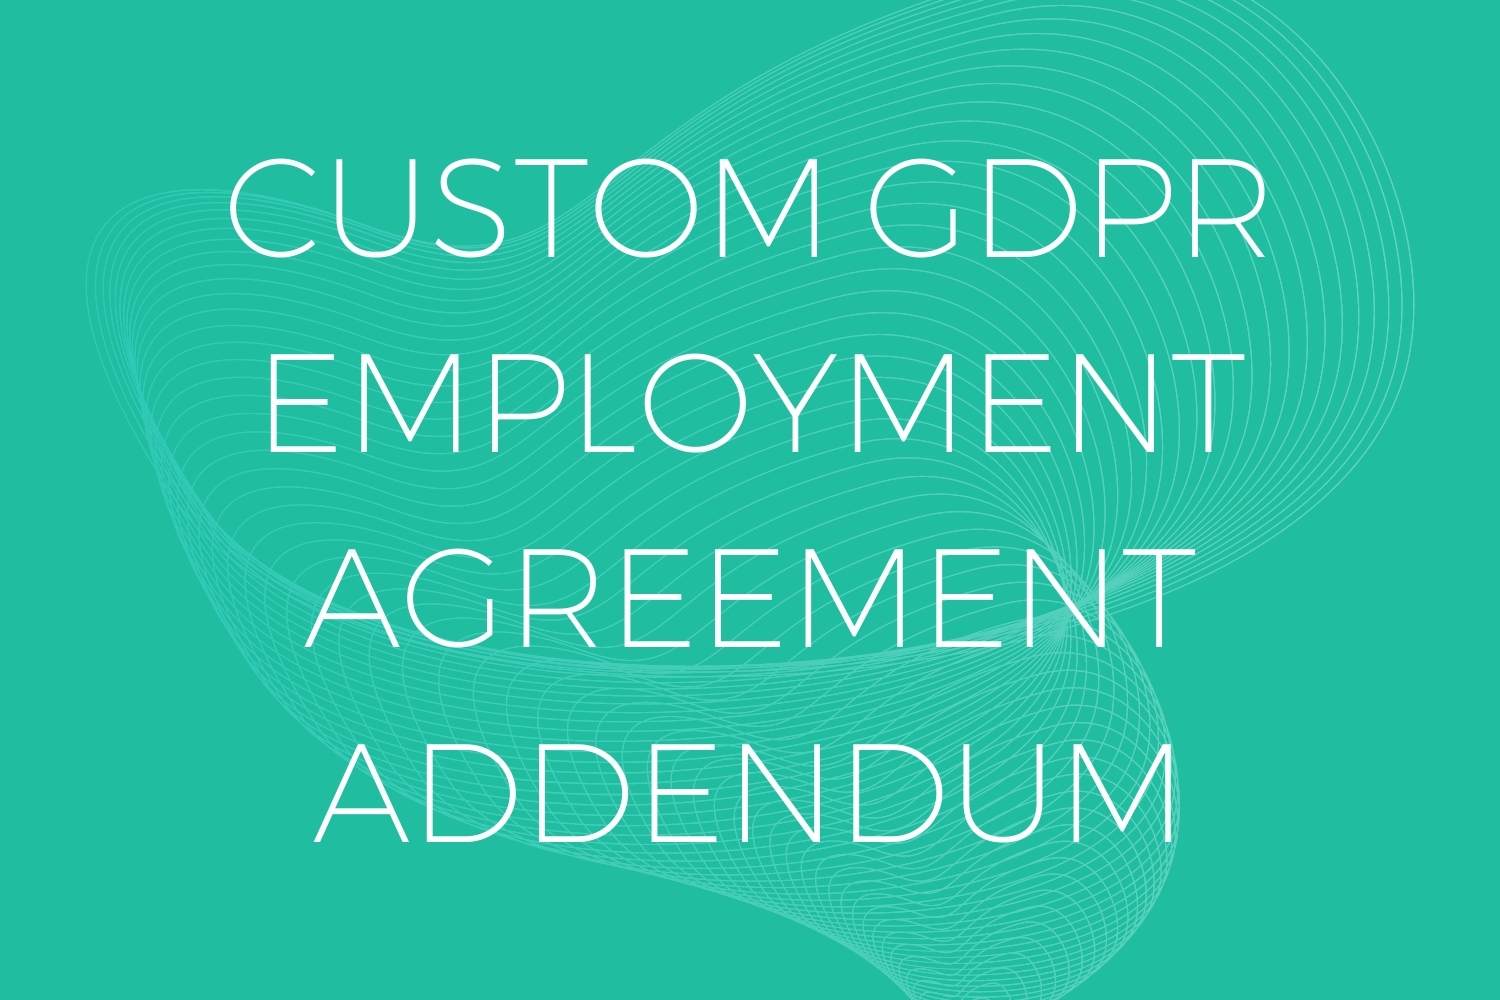 GDPR Employment Agreement Addendum